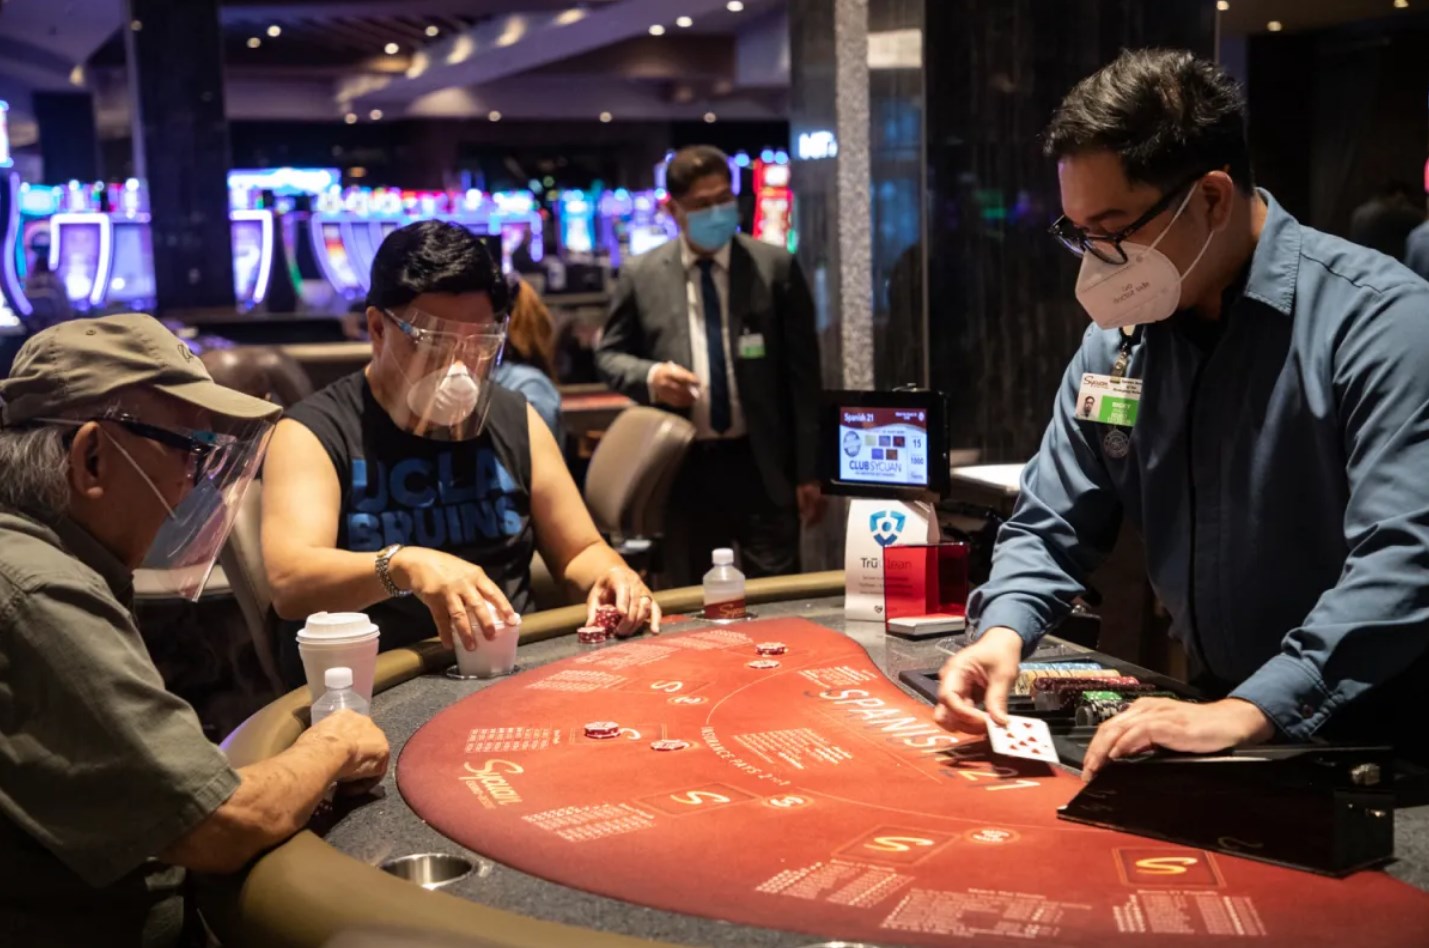 Covid-19 Impact in Casinos